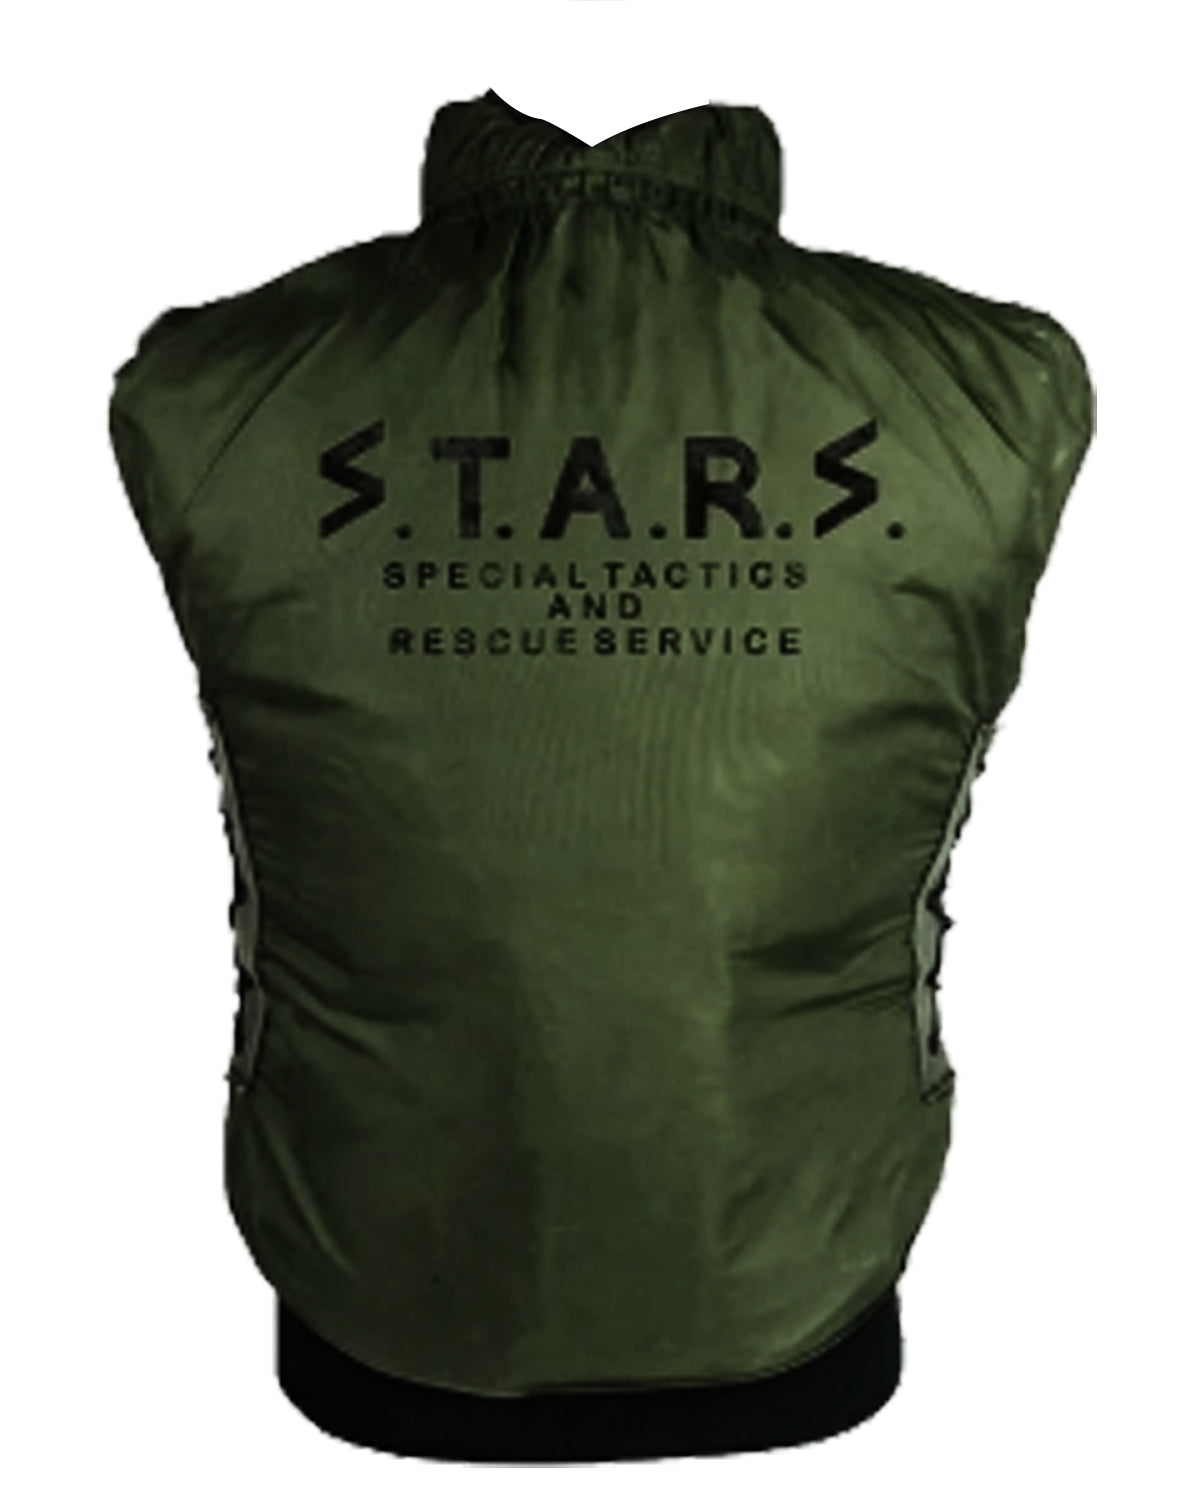 Chris Redfield Resident Evil Game Green Puffer Vest